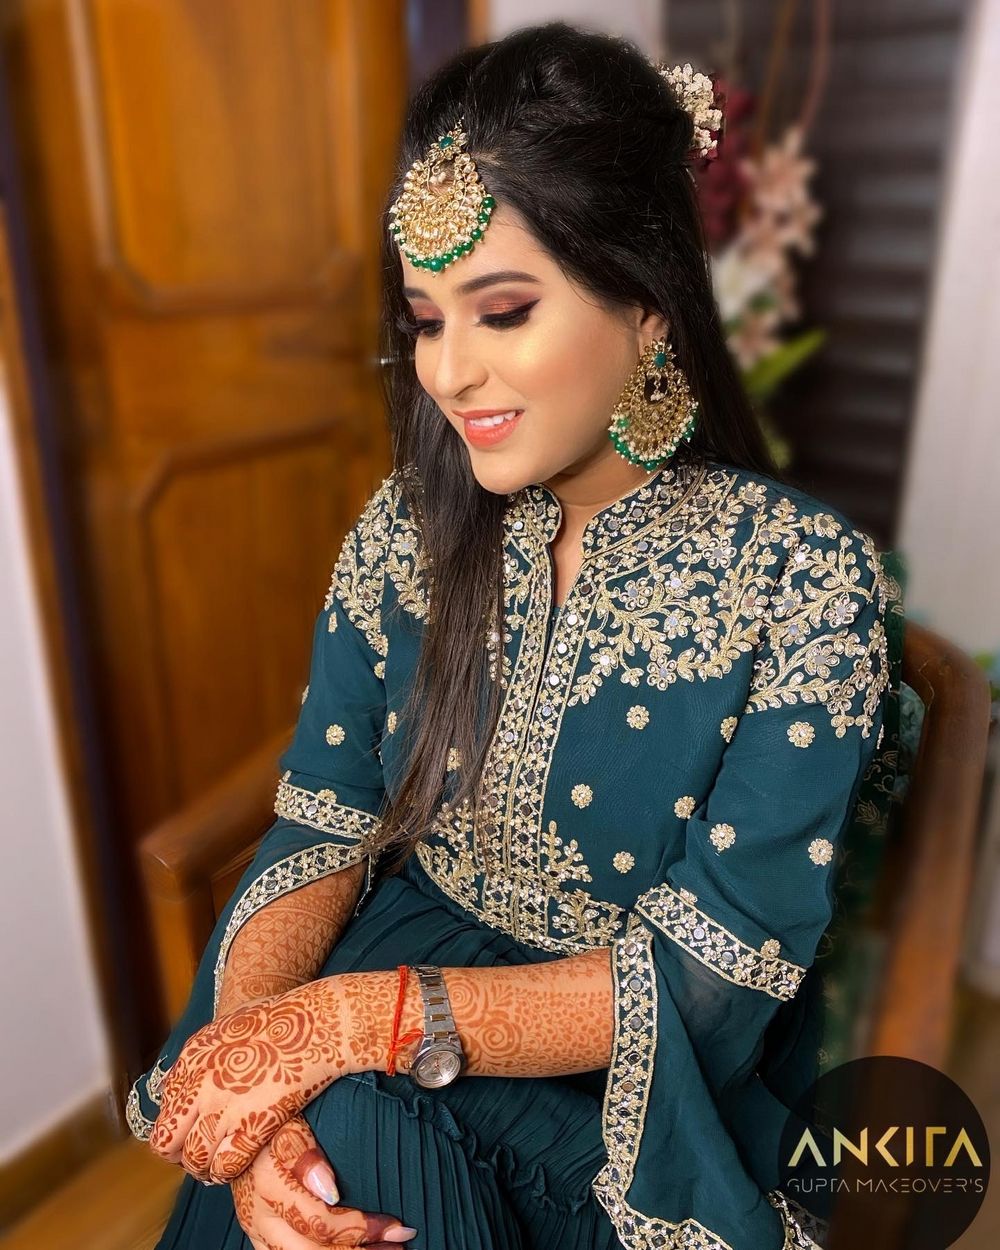 Photo From Roka Brides - By Ankita Gupta Makeovers